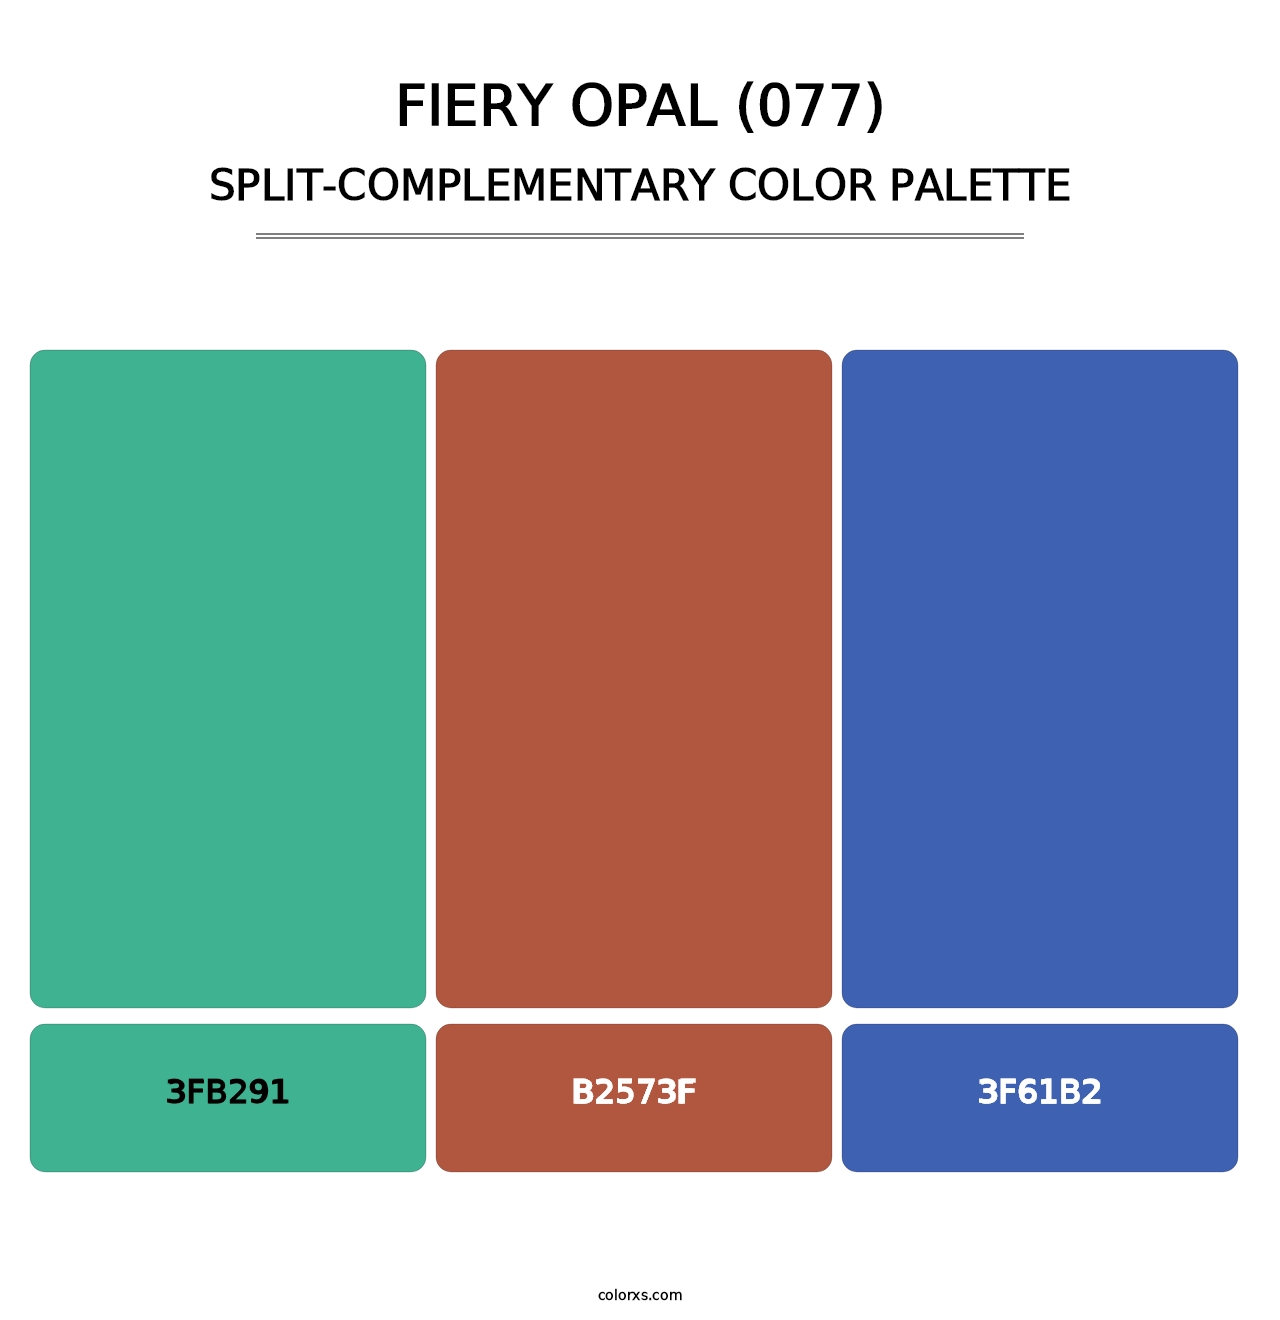 Fiery Opal (077) - Split-Complementary Color Palette